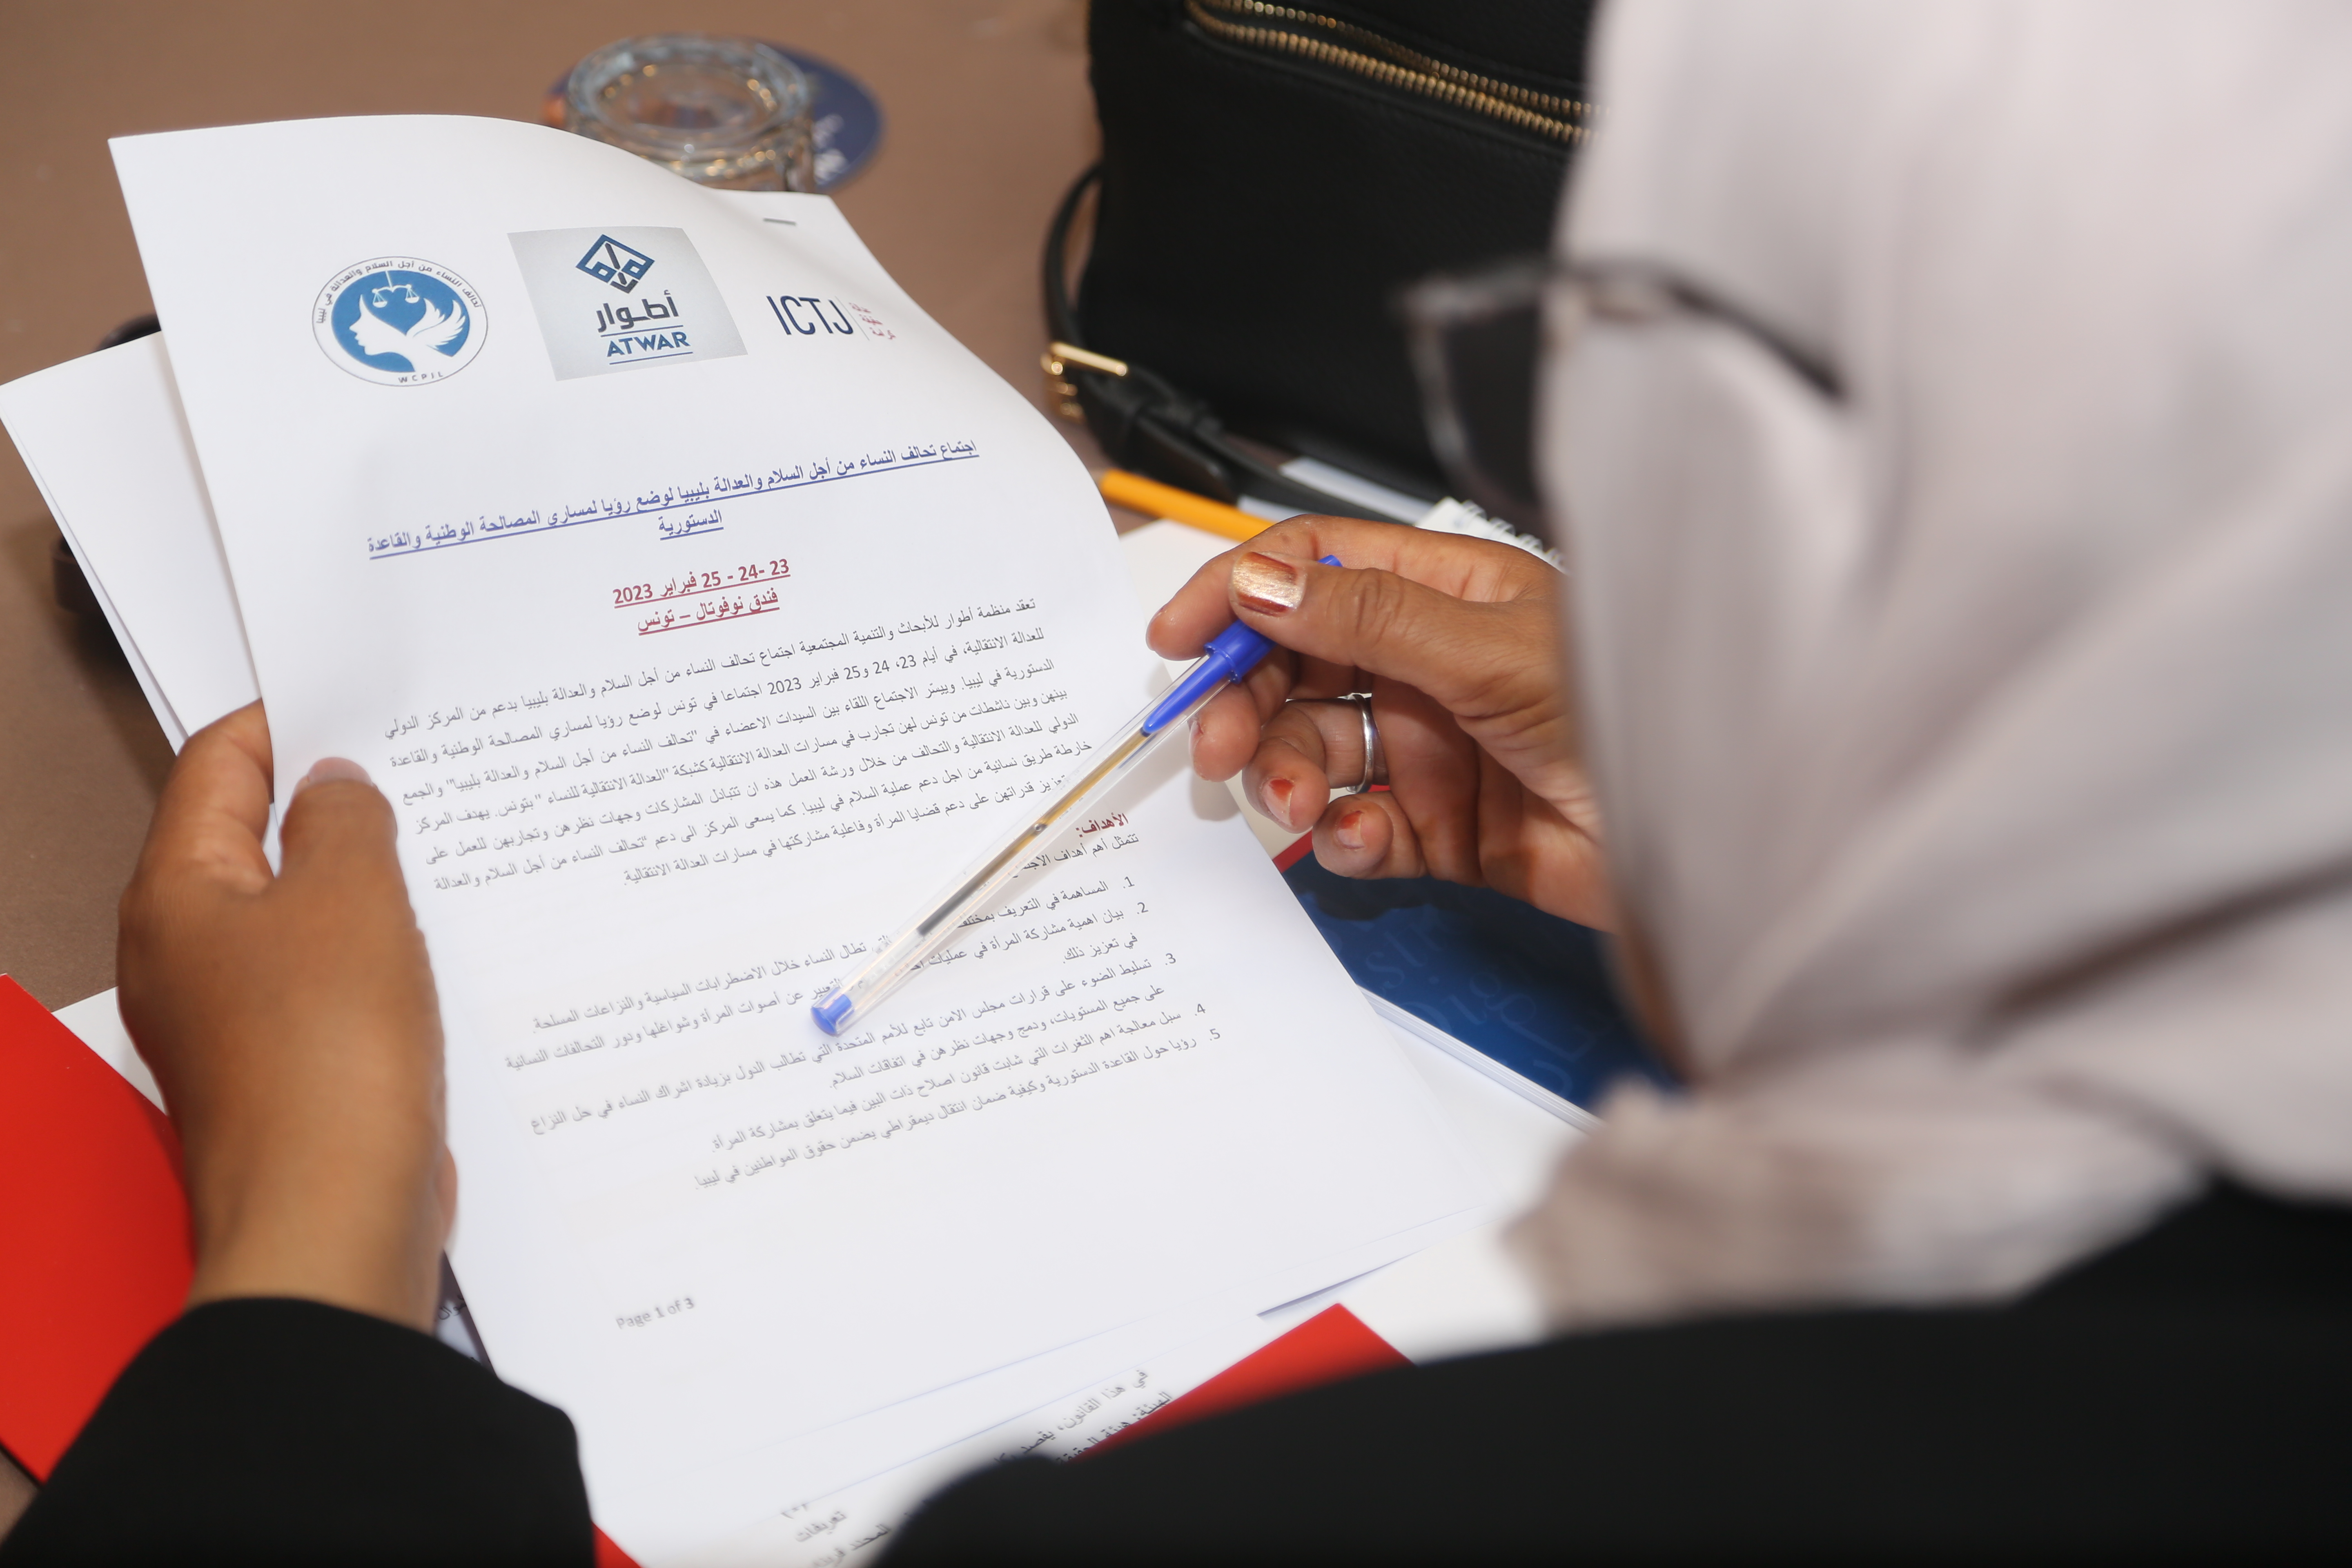 Un participant libyen lit le programme et la note conceptuelle de l'atelier de février 2023 à Tunis.